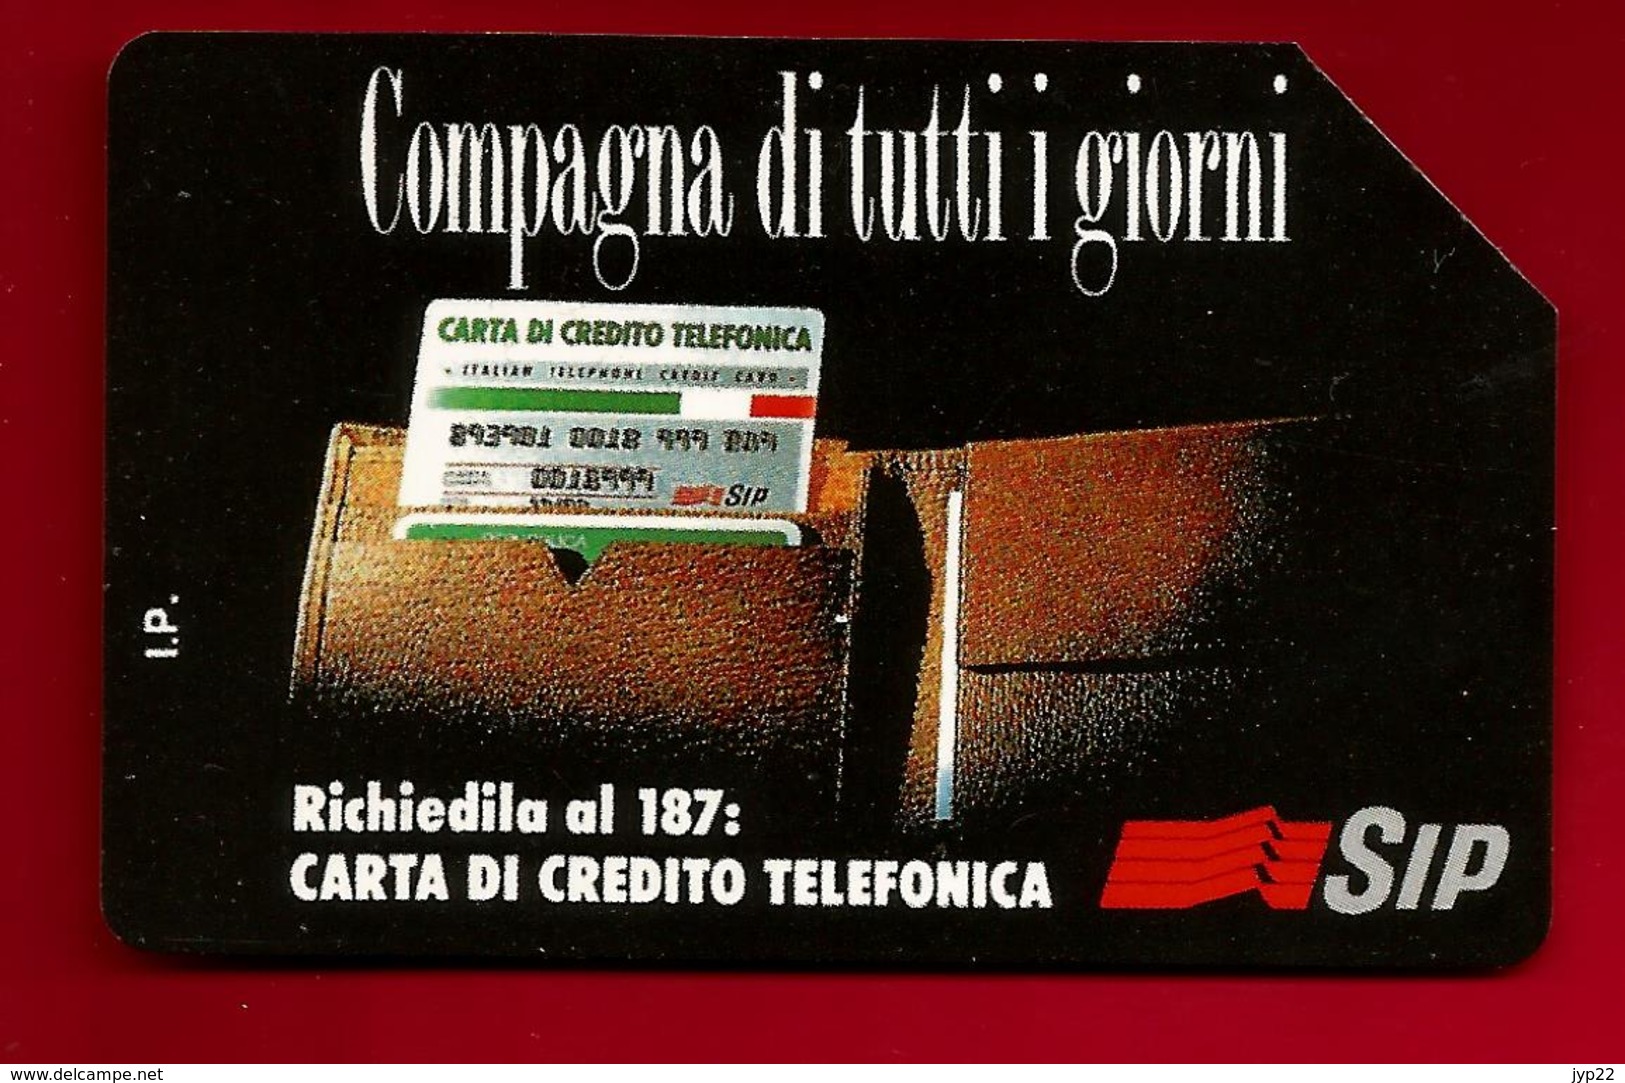 Télécarte Téléphone Italie Compagna Di Tutti I Giorni Carta Di Credito Telefonica 5000 Lire - Sip - Validité 31-12-1995 - Zu Identifizieren